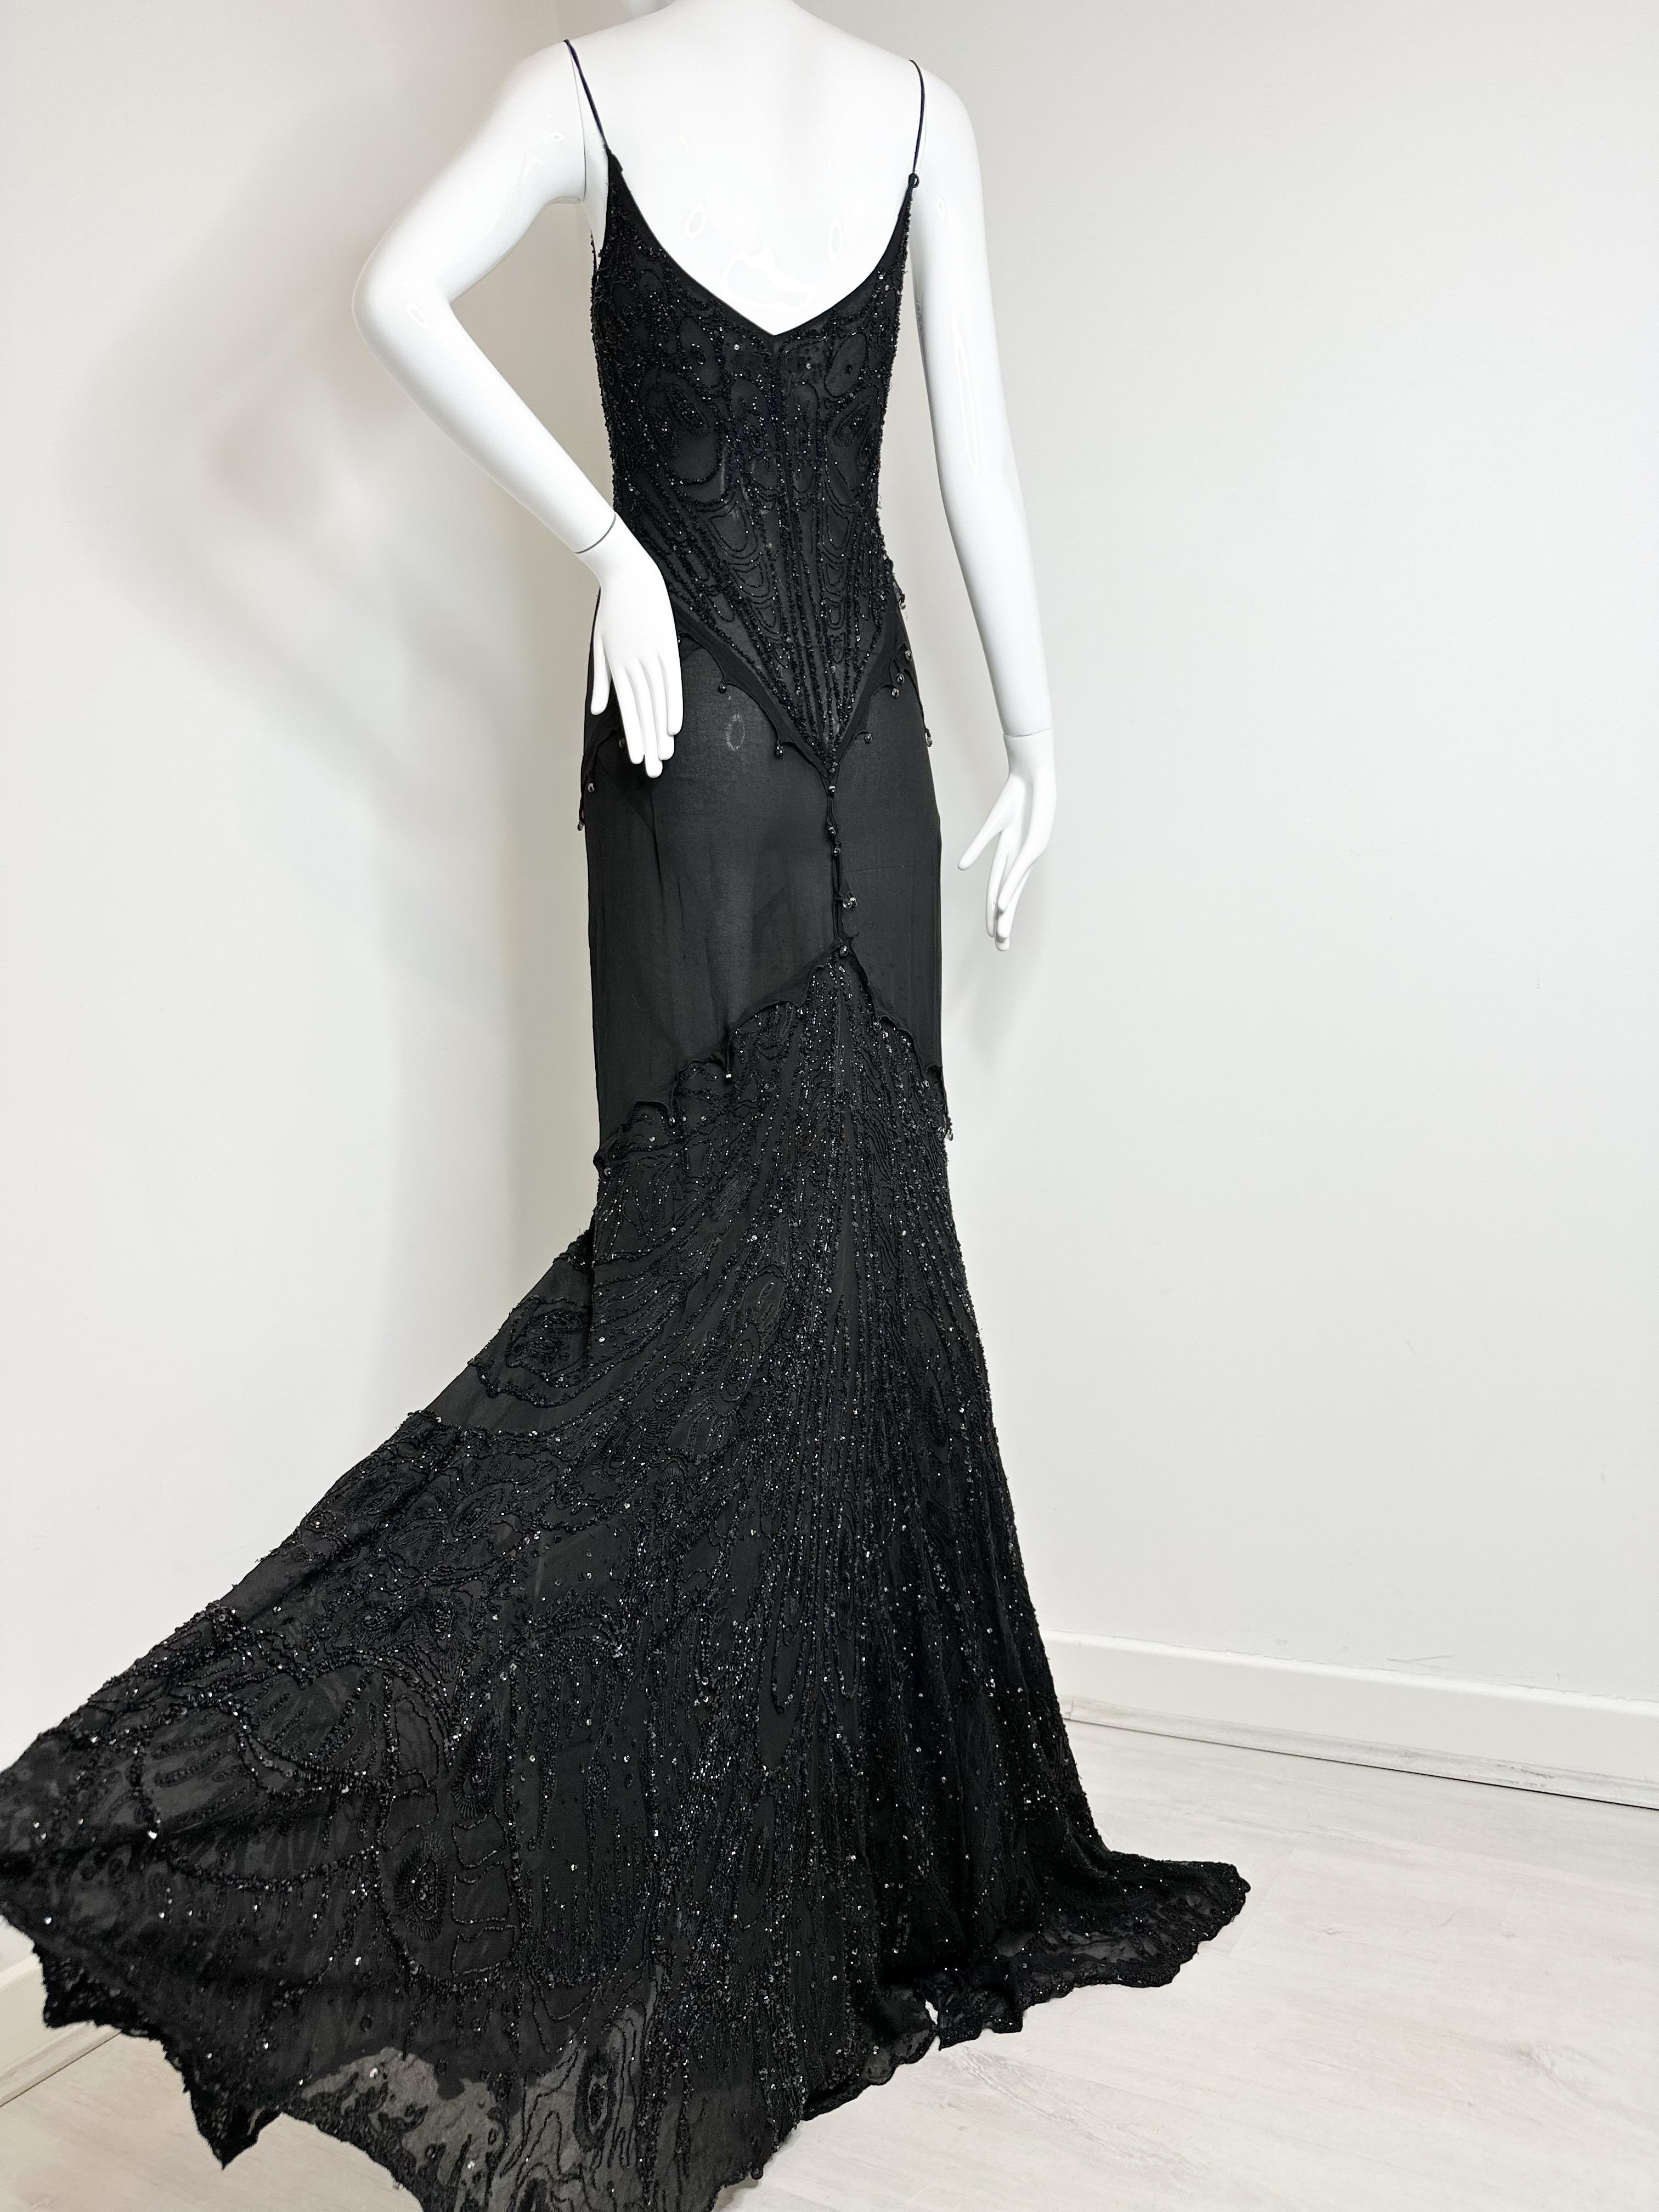 Roberto Cavalli 2003 Schwarzes Kleid mit Perlen 

Es ist absolut atemberaubend! Teil meiner Collection'S und ich bin nur bereit, sie für den richtigen Preis abzugeben. 

Keine Größe Tag, wie es entfernt wurde, aber es ist Größe S 

Insgesamt ist es